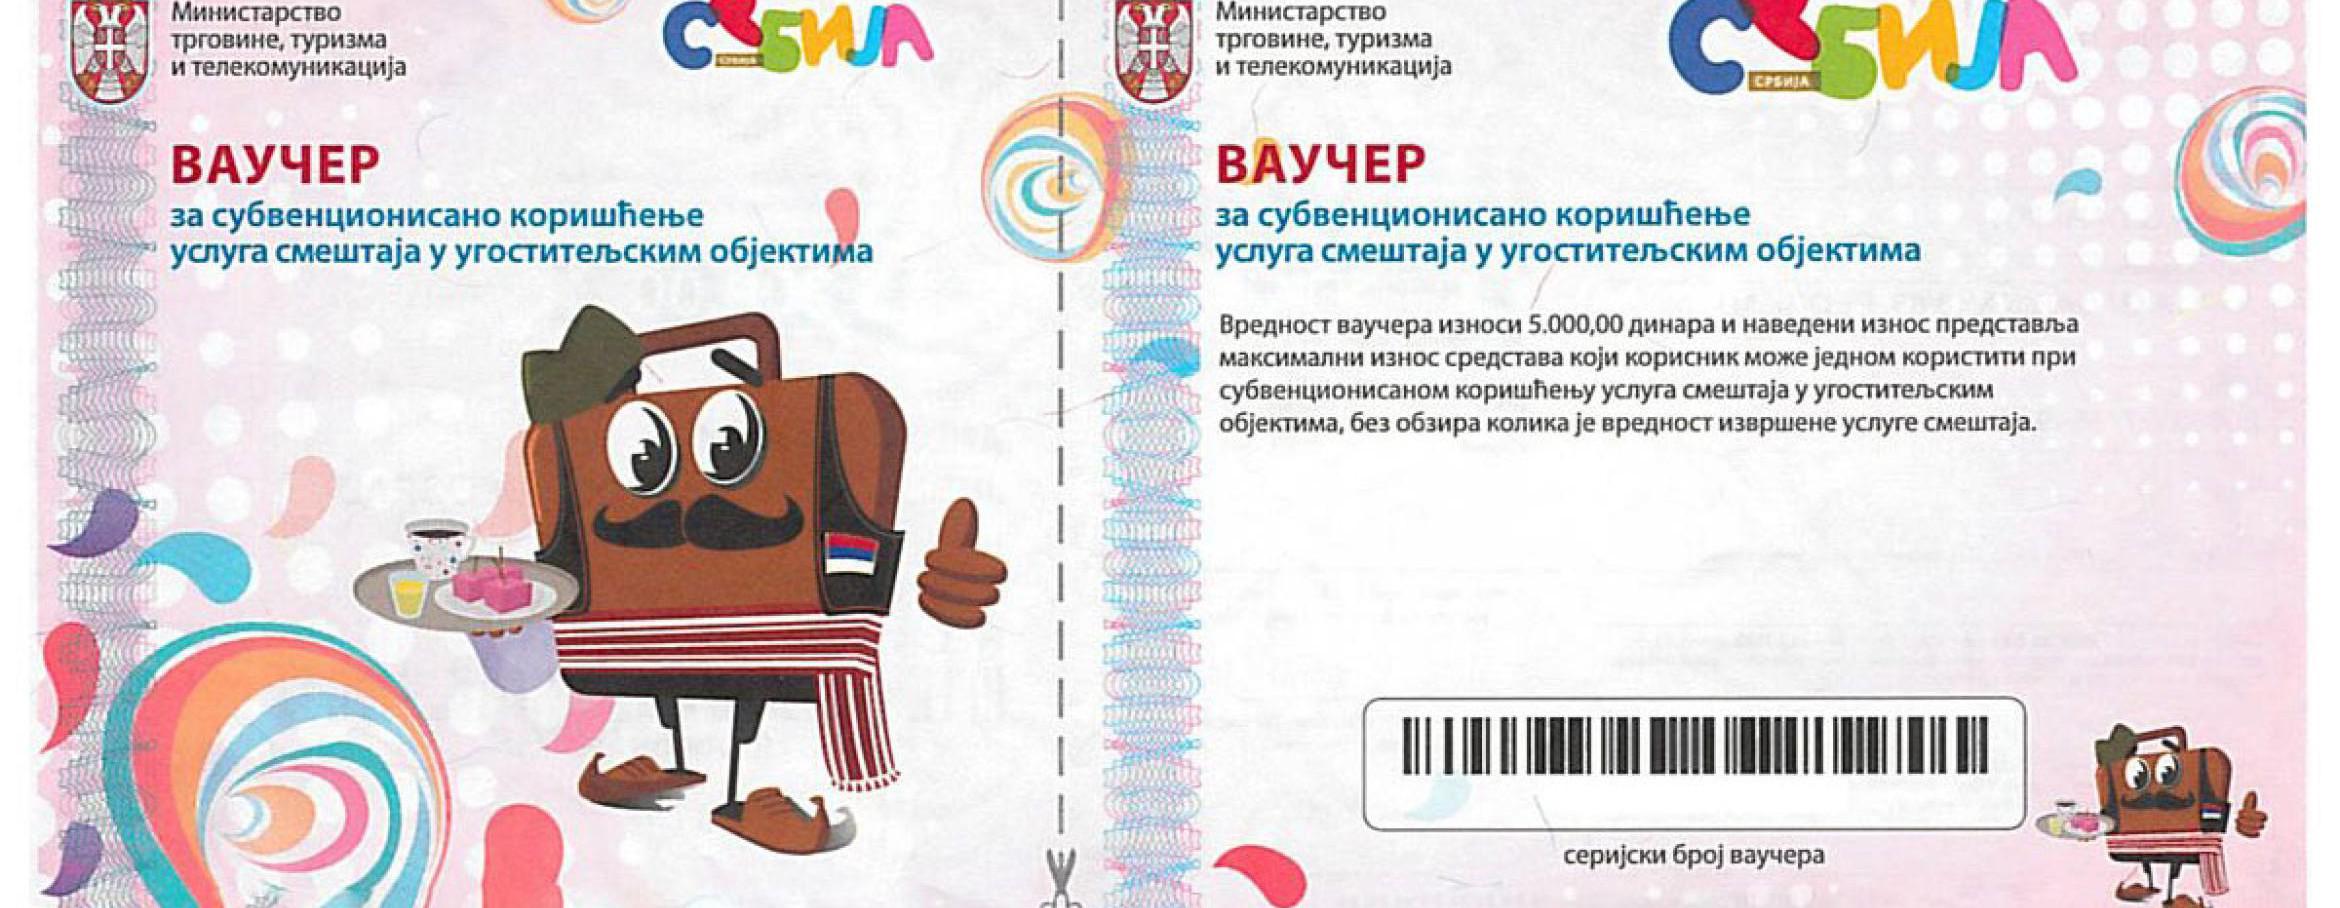 Vaučeri 2023 – Besplatan vaučer od 5.000 dinara za odmor u Srbiji 2023. godine